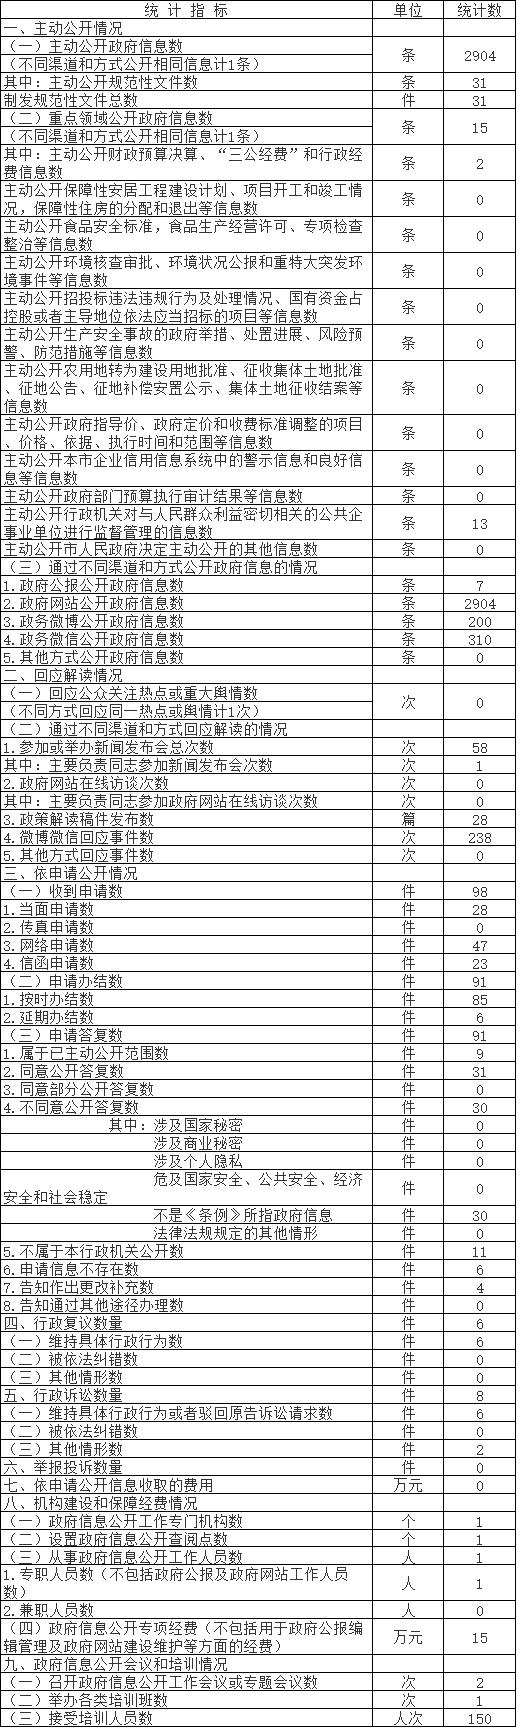 北京市民政局政府信息公开情况统计表(2017年度)